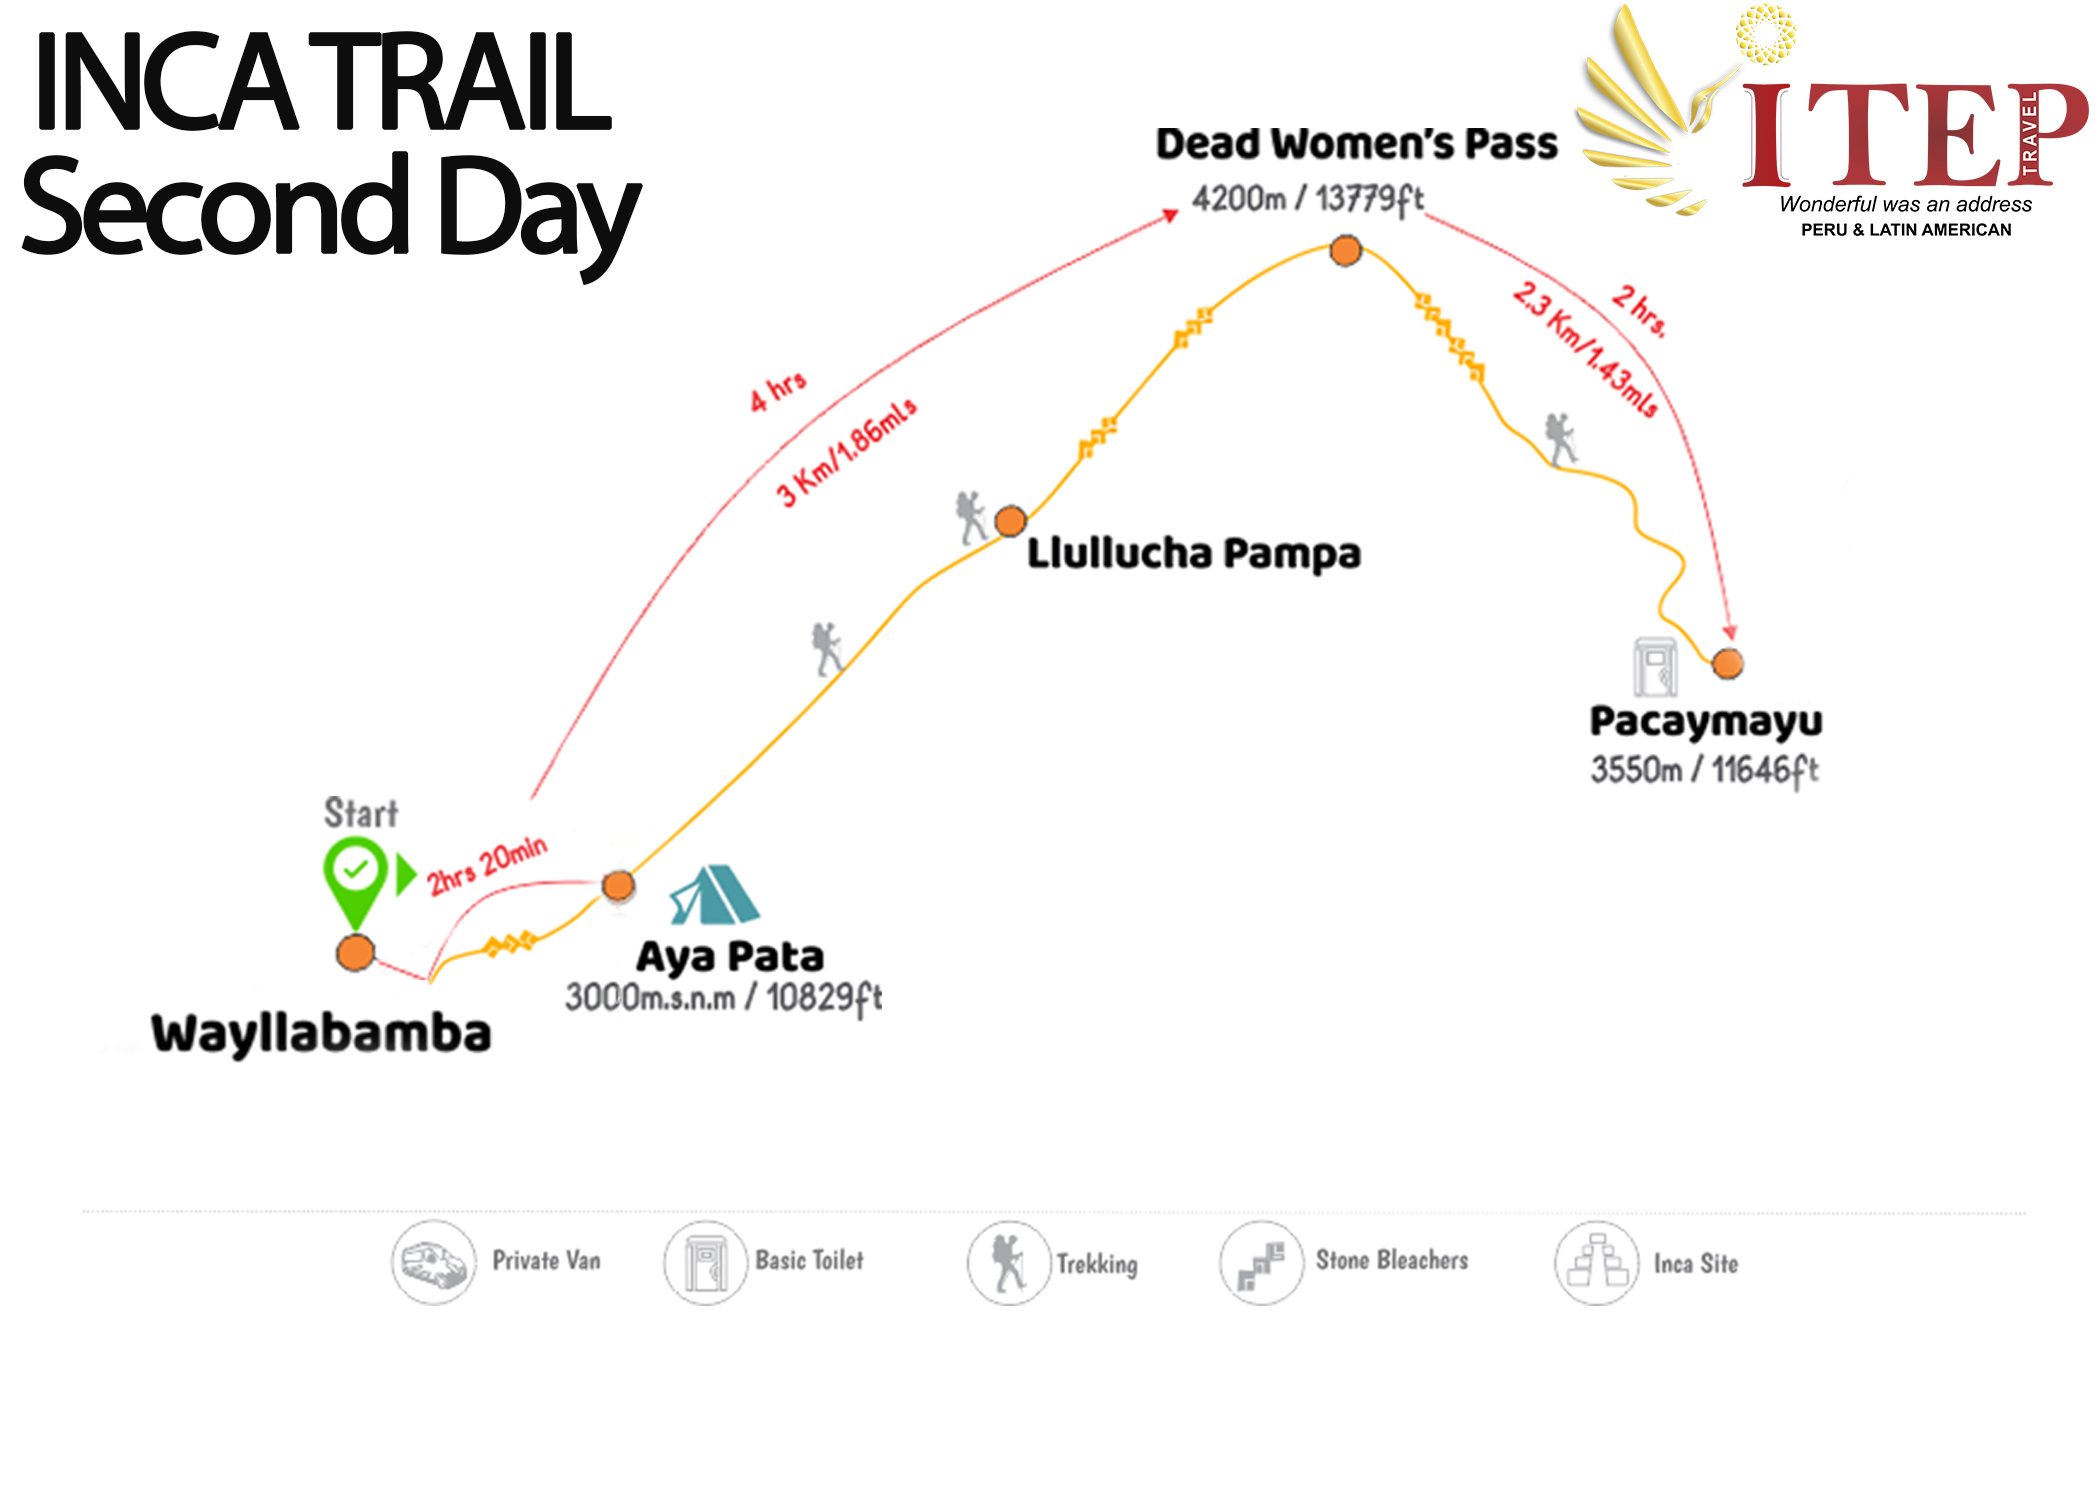 Map - Day 2: Trekking “Wayllabamba to Pacaymayuc/ Runkuraqay”